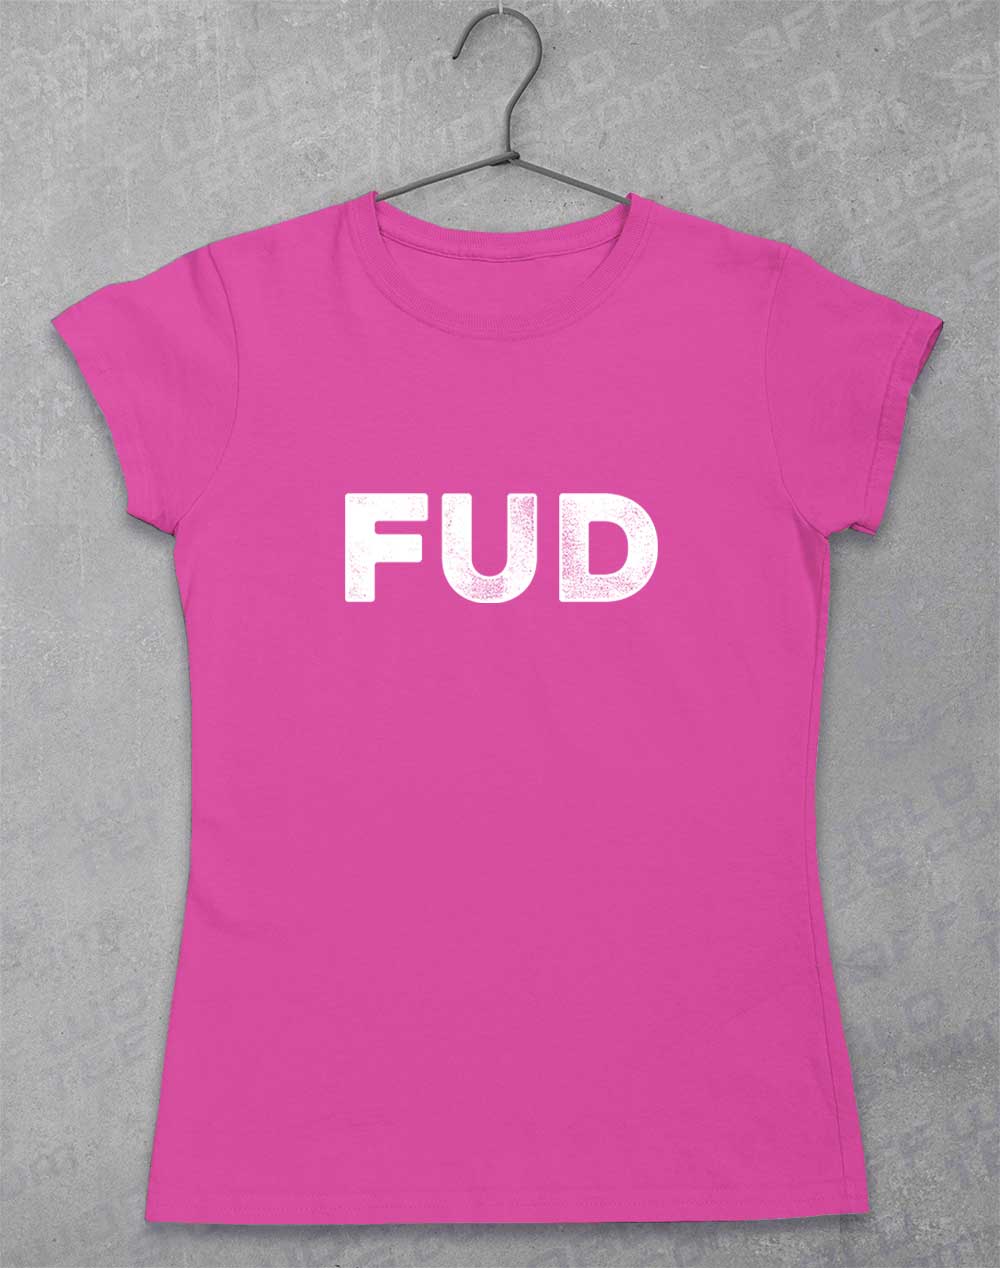 Azalea - Fud Women's T-Shirt